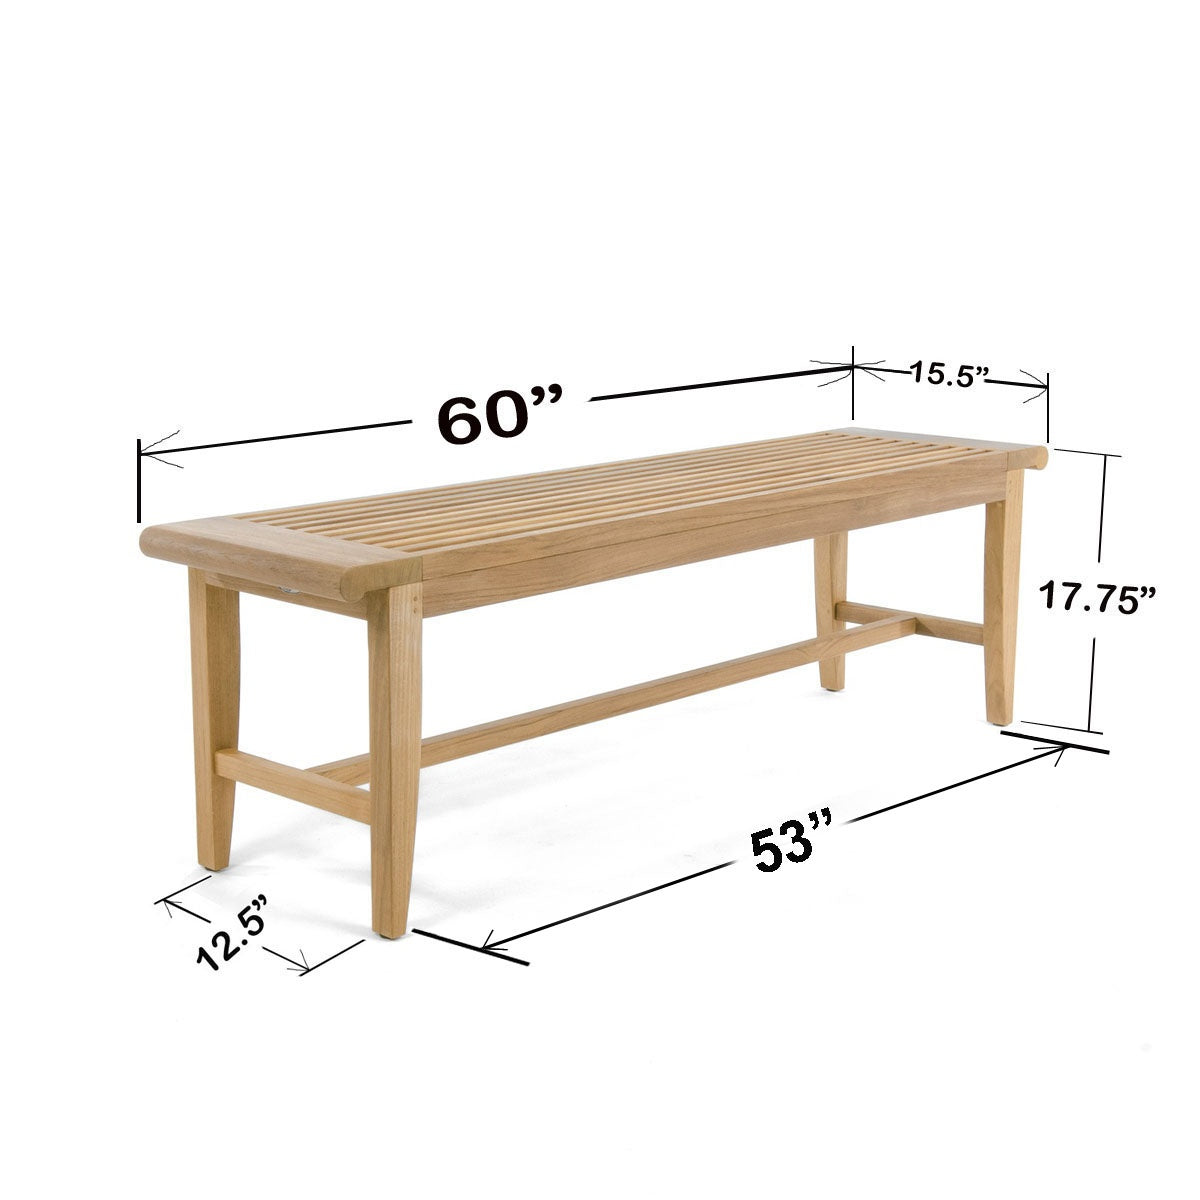 Westminster Teak - 5 ft Laguna Teak Backless Bench Also Available in 3ft, 4ft & 6ft Lengths - 13916